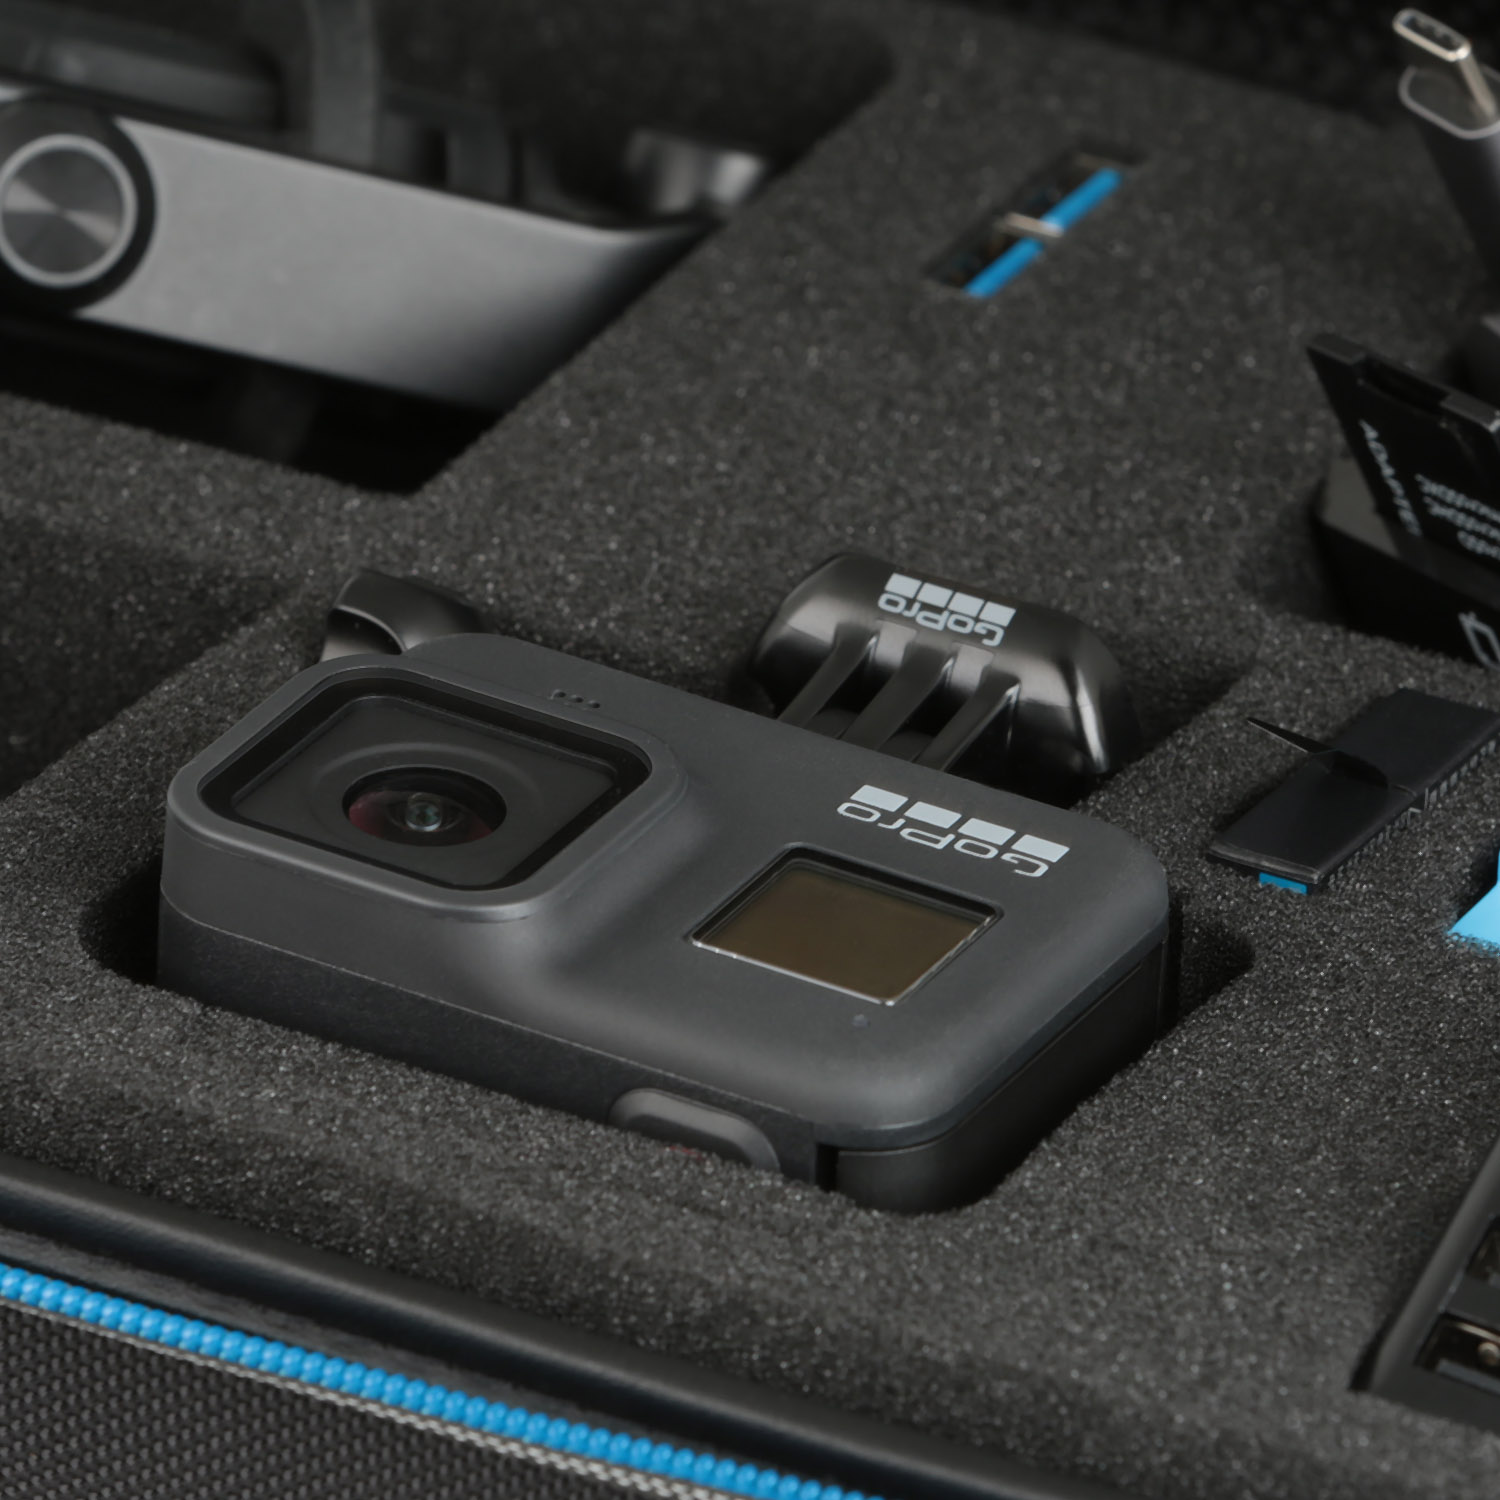 WICKED CHILI GOP Case für / 510 kompatibel schwarz 425 / Schutztasche, Rollei mit Kamera / / 530 Koffer Tasche 560 / 540 550 Actioncam